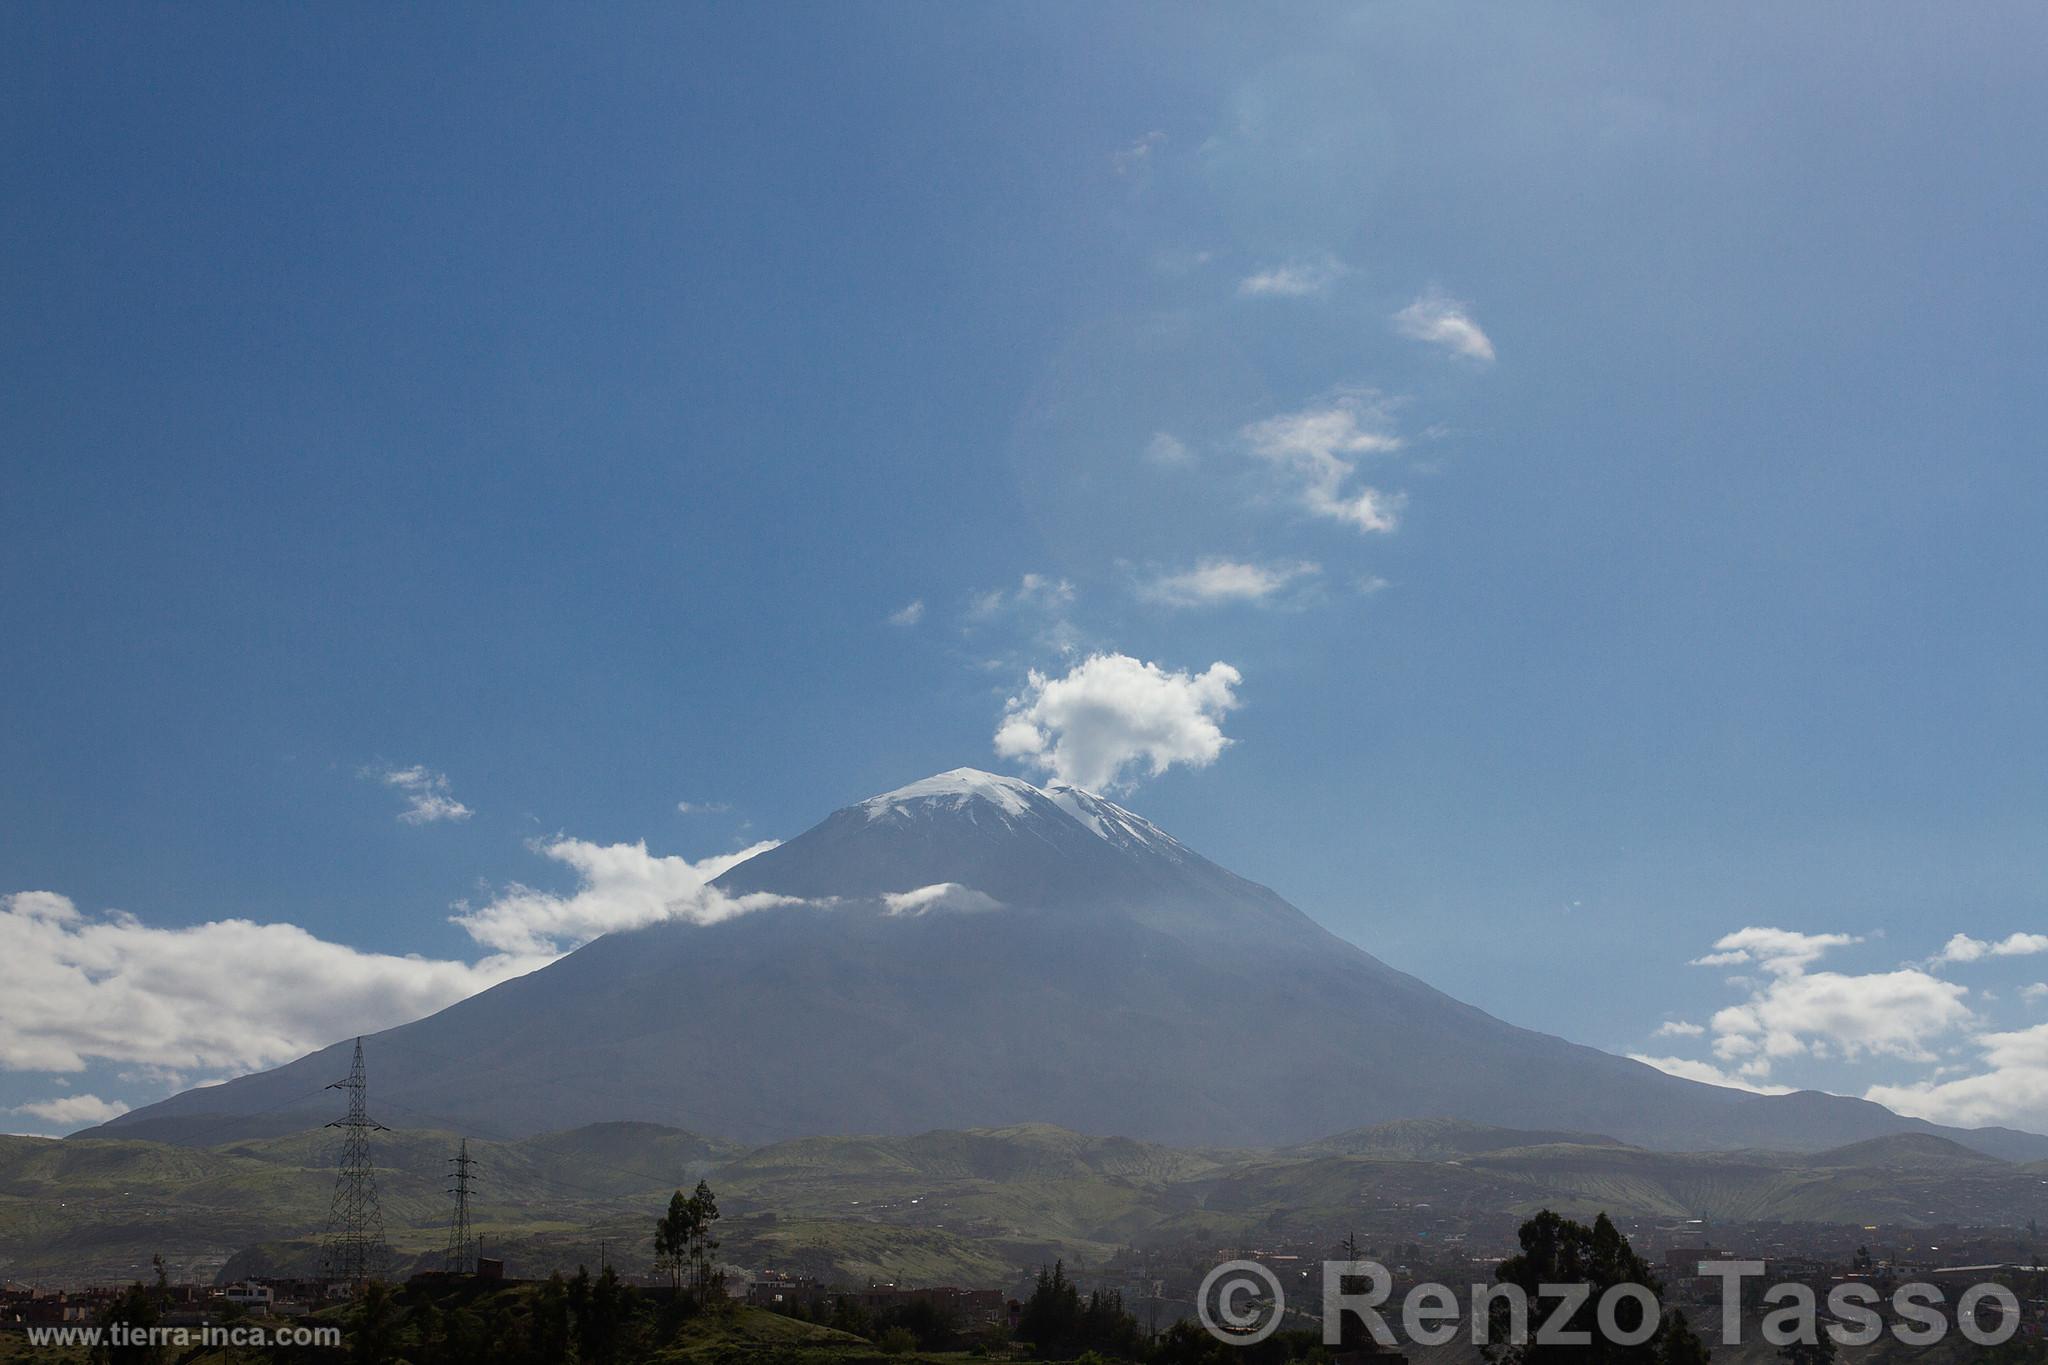 Volcán Misti, Arequipa